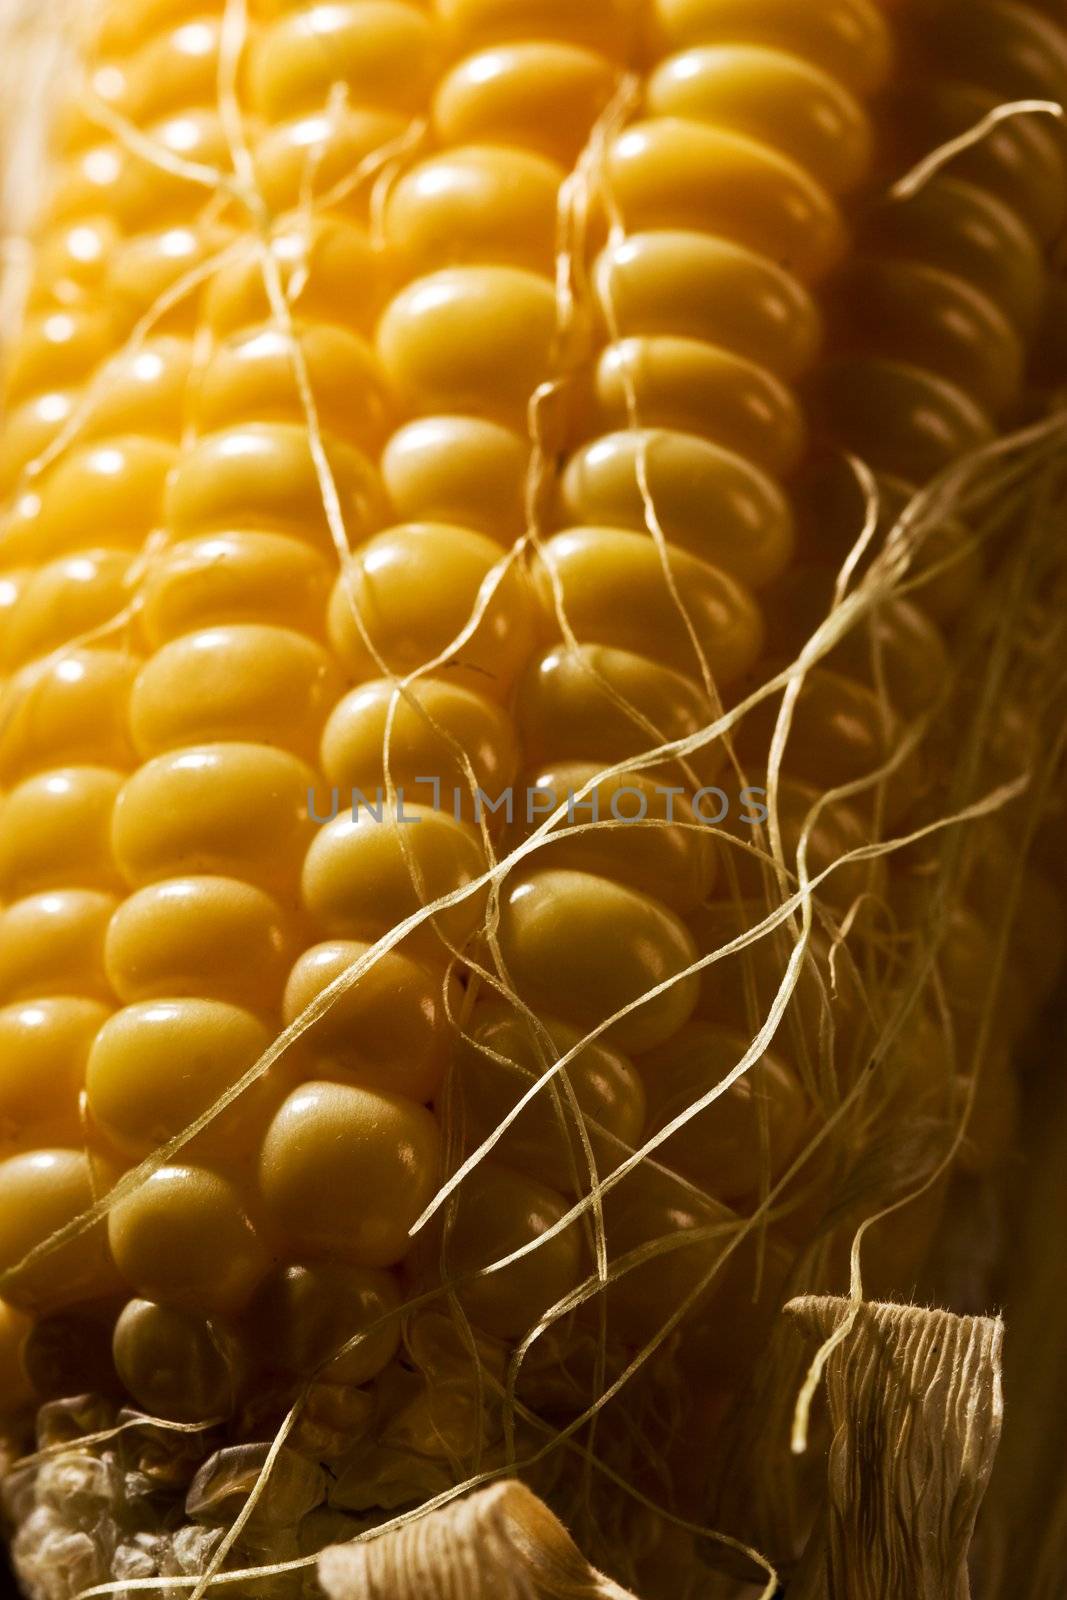 foodstuff: macro picture of freshly golden corn